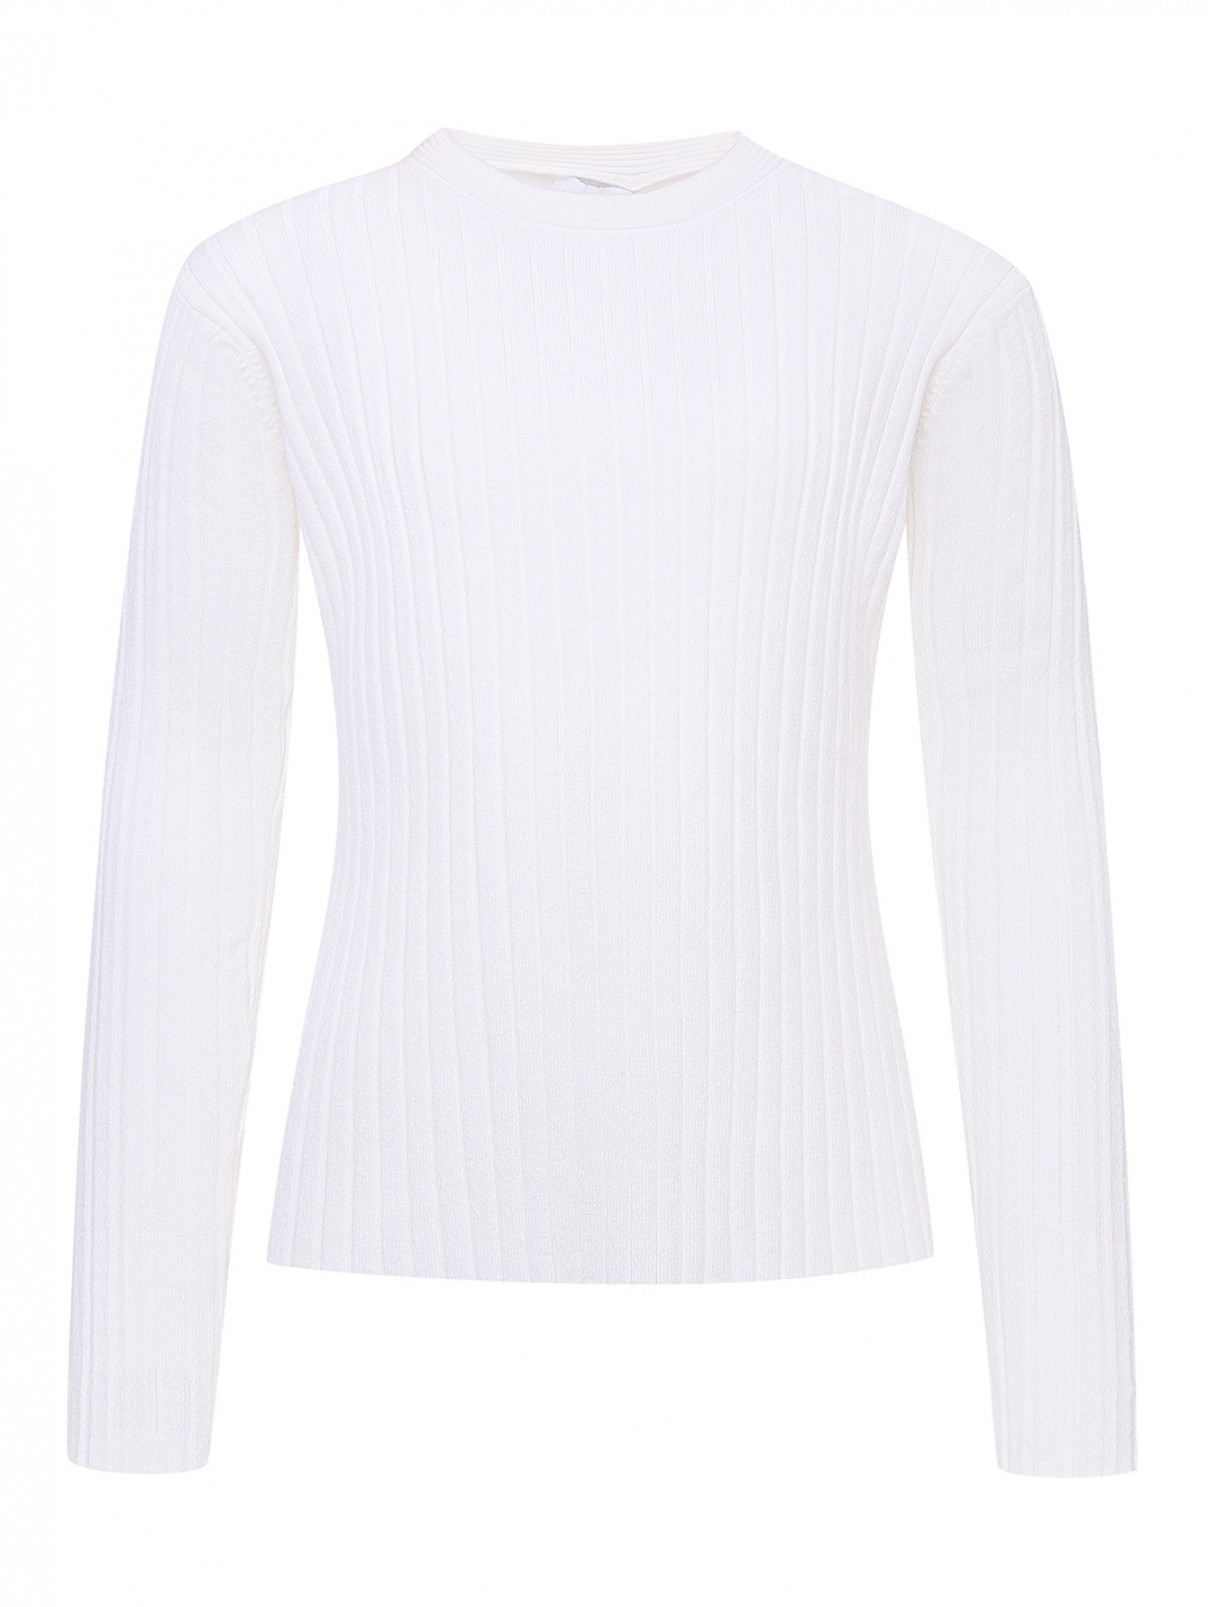 Однотонный джемпер в рубчик Aletta Couture  –  Общий вид  – Цвет:  Белый